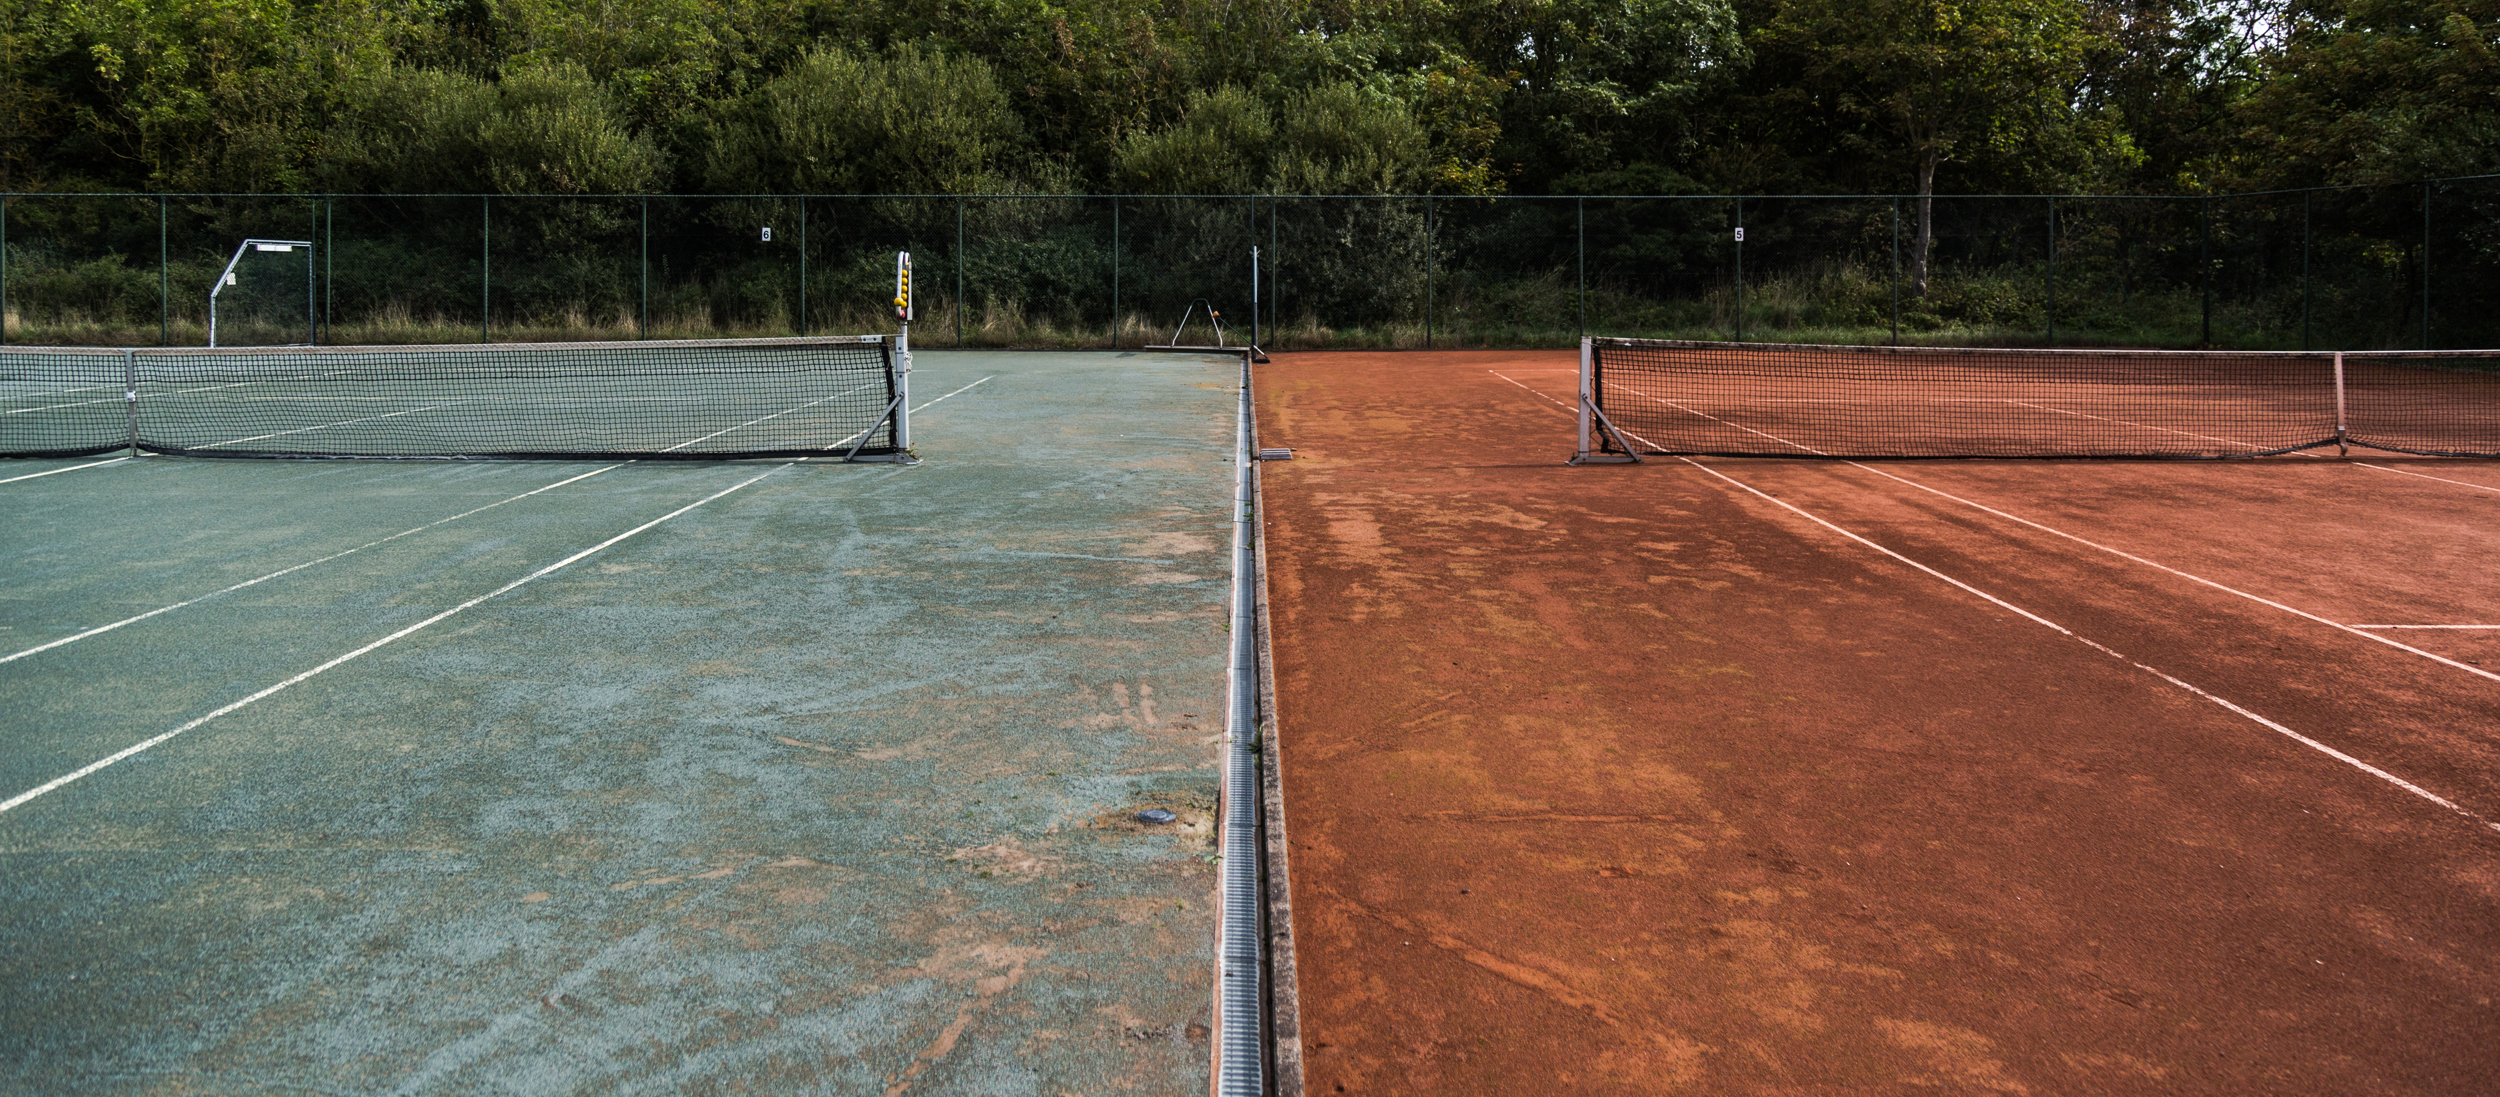 verschillende tennisbanen in opbouw